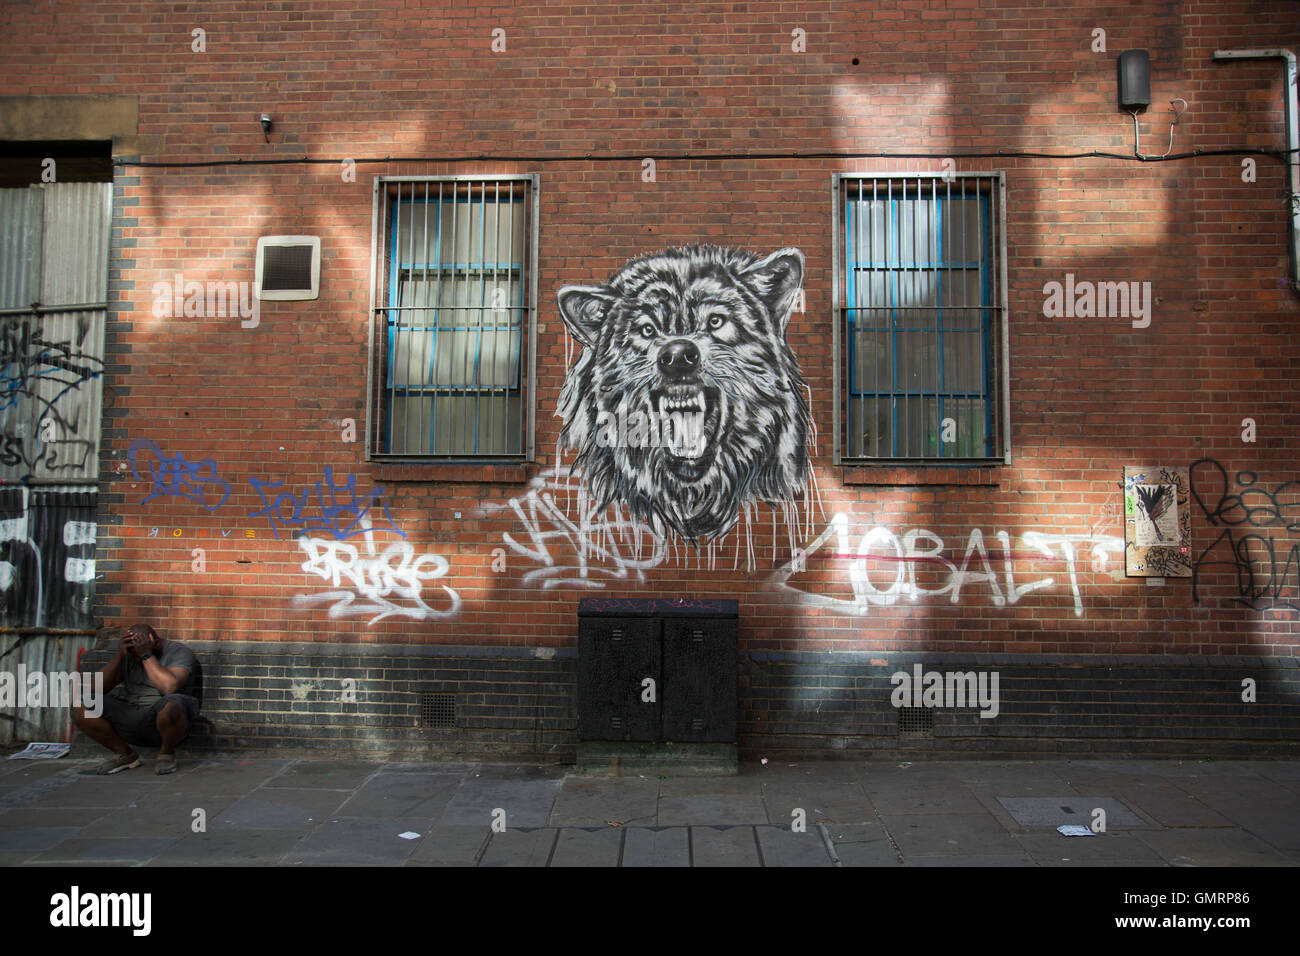 Street Art wolf su Brick Lane in Shoreditch, East London, Regno Unito. Arte di strada nella East End di Londra è un sempre mutevole enigma visiva, come le opere cambiano costantemente, come consigli pulire alcuni muri o nuove opere andare fino al posto di altri. Mentre alcuni considerano questo vandalismo o graffiti, queste opere sono molto popolare tra la popolazione locale e i turisti come un senso di intensità rimane nel lavoro, molti dei quali hanno i messaggi sottili. Foto Stock